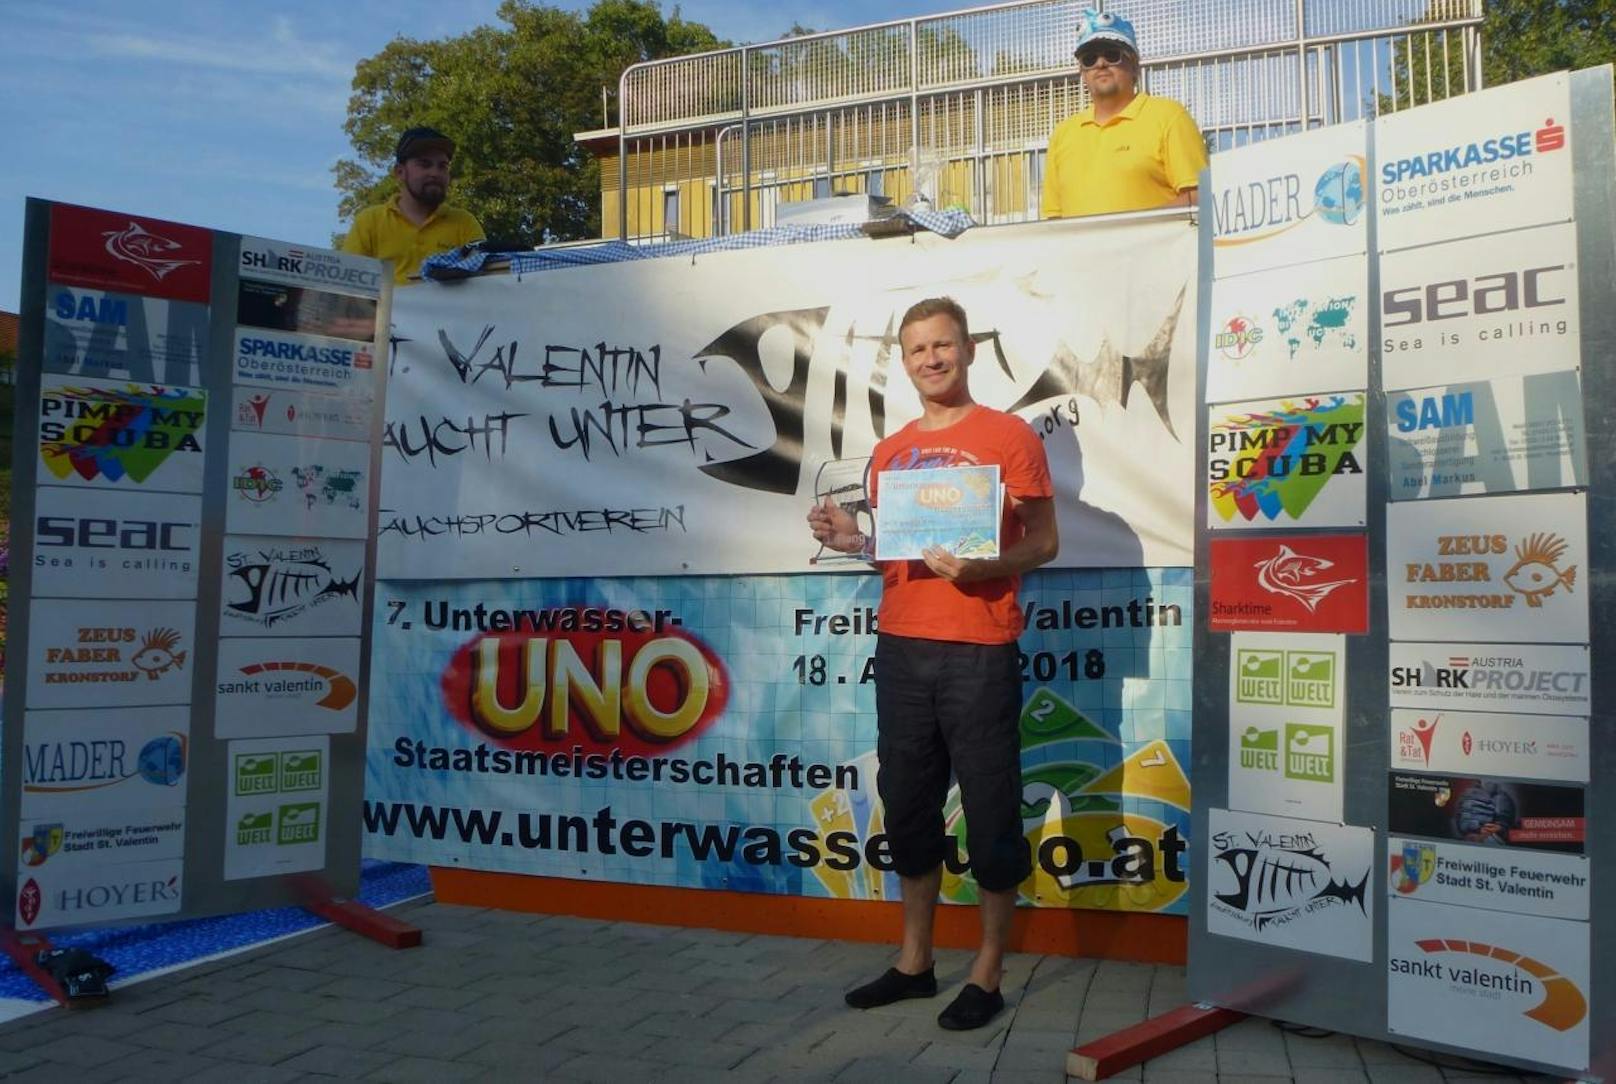 Stefan Lehner aus Schönau ist heuer glücklicher Gewinner des Bewerbs: Er darf sich ab sofort Unterwasser Uno-Staatsmeister nennen.